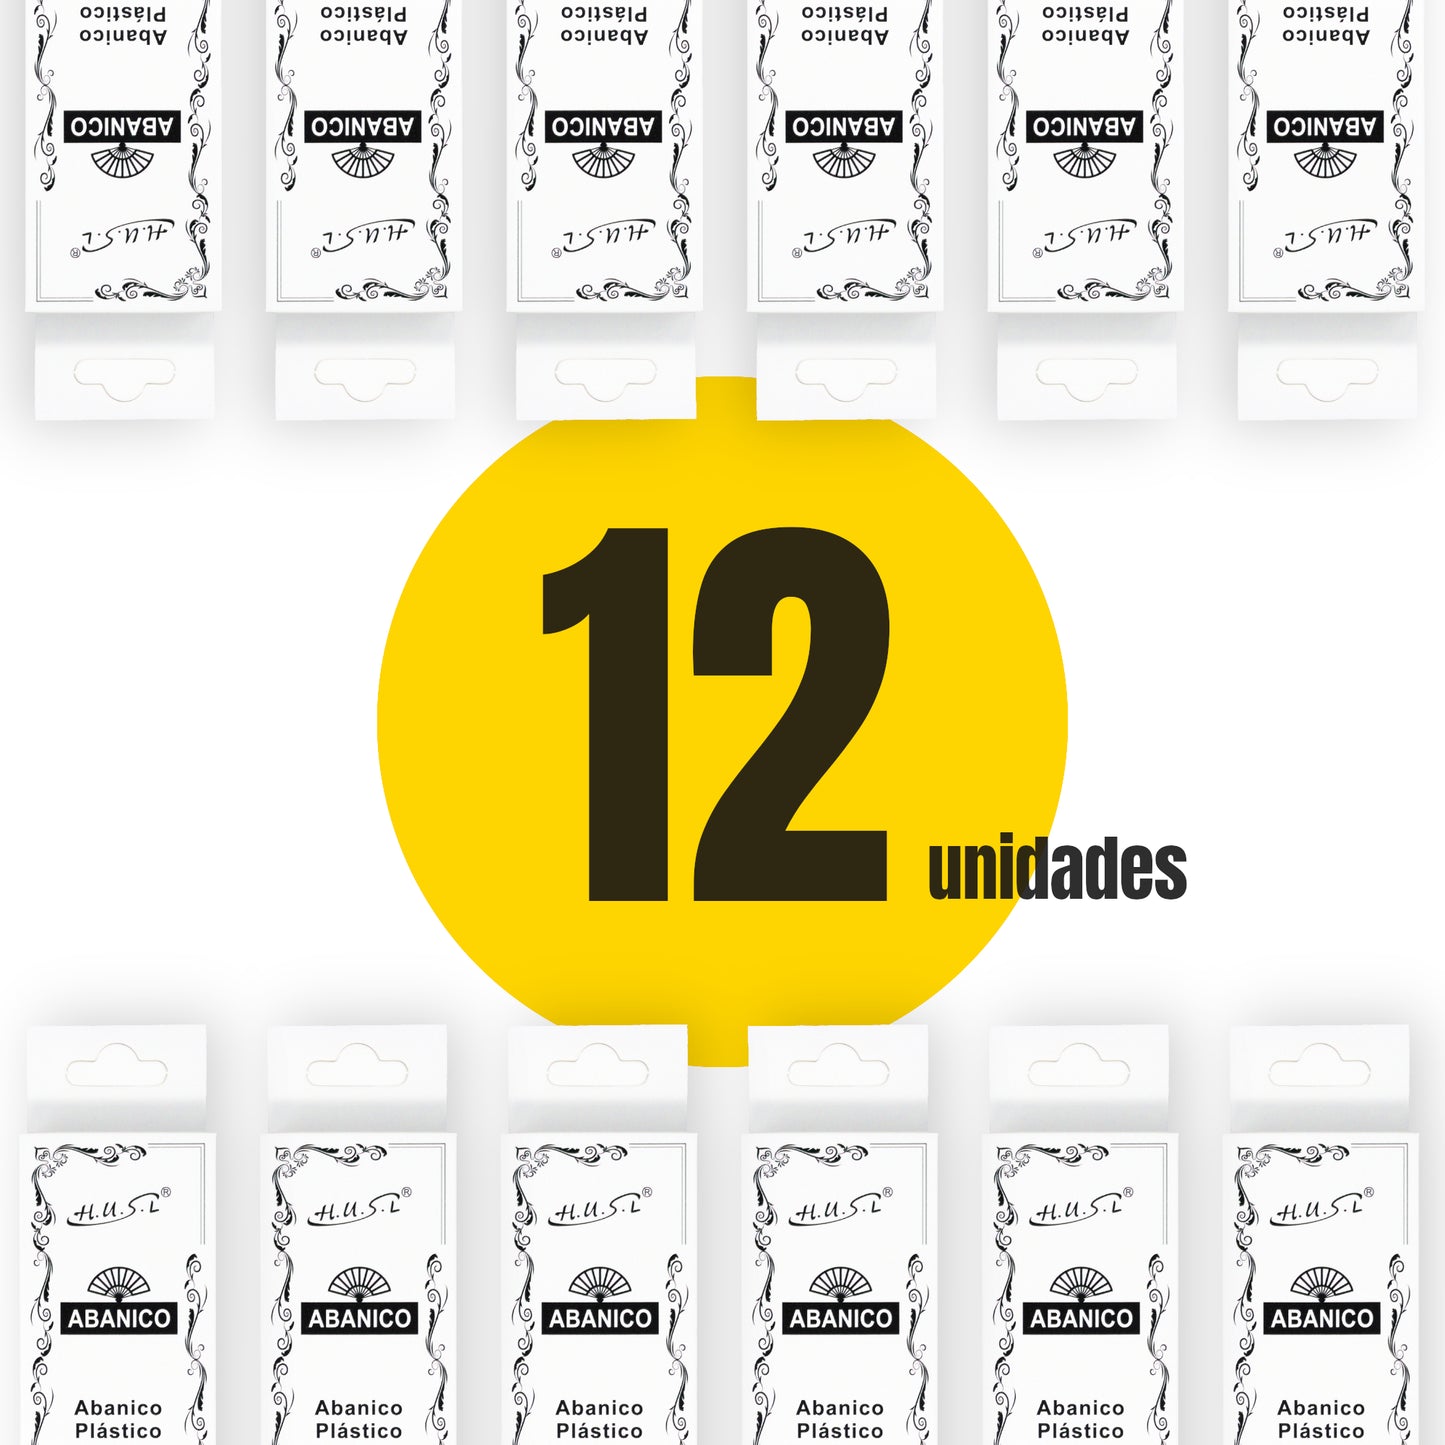 HOME UNIVERSAL Pack 12 Abanicos de Plástico con Empaquetado Individual para Regalar, Abanicos para Bodas, Comuniones, Fiestas y Eventos (Arcoiris_Orgullo)